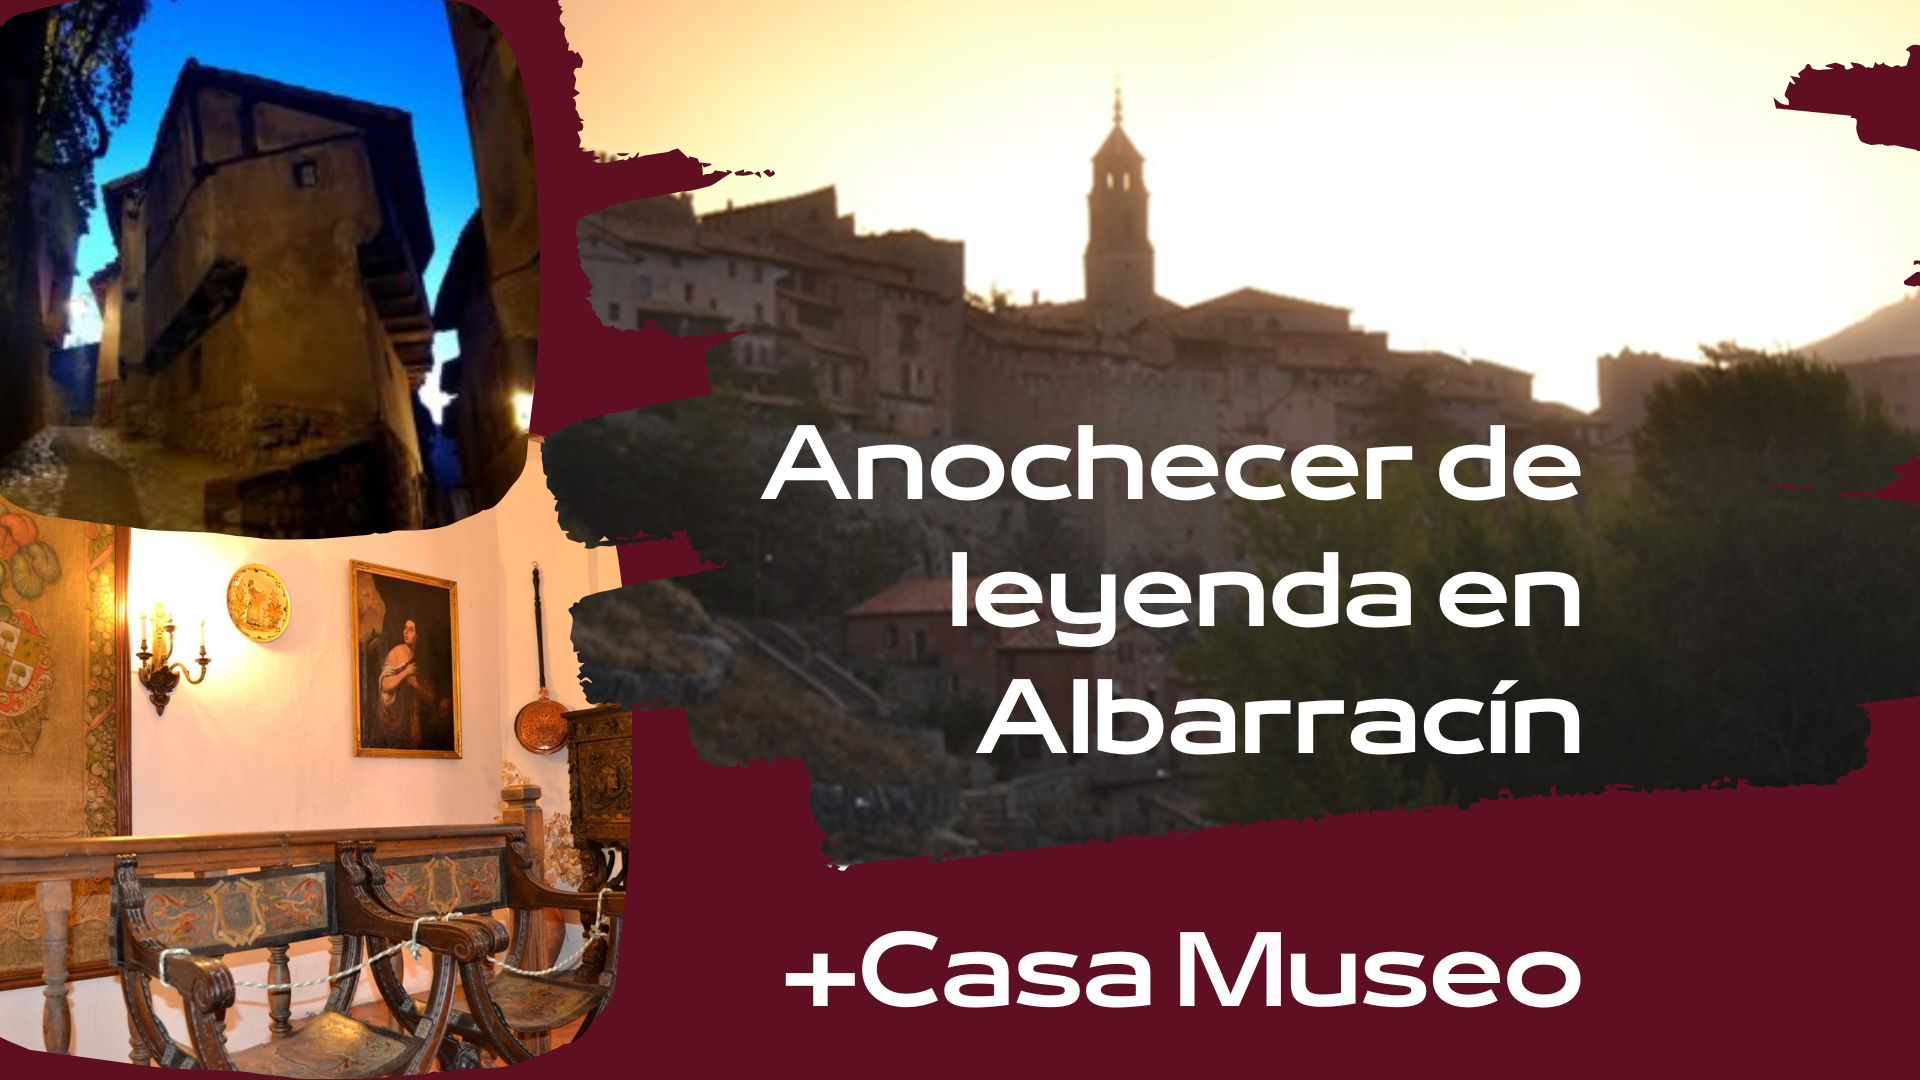 Visitas guiadas en Albarracín con Anochecer de Leyendas + Casa Museo esta Semana Santa del 2023